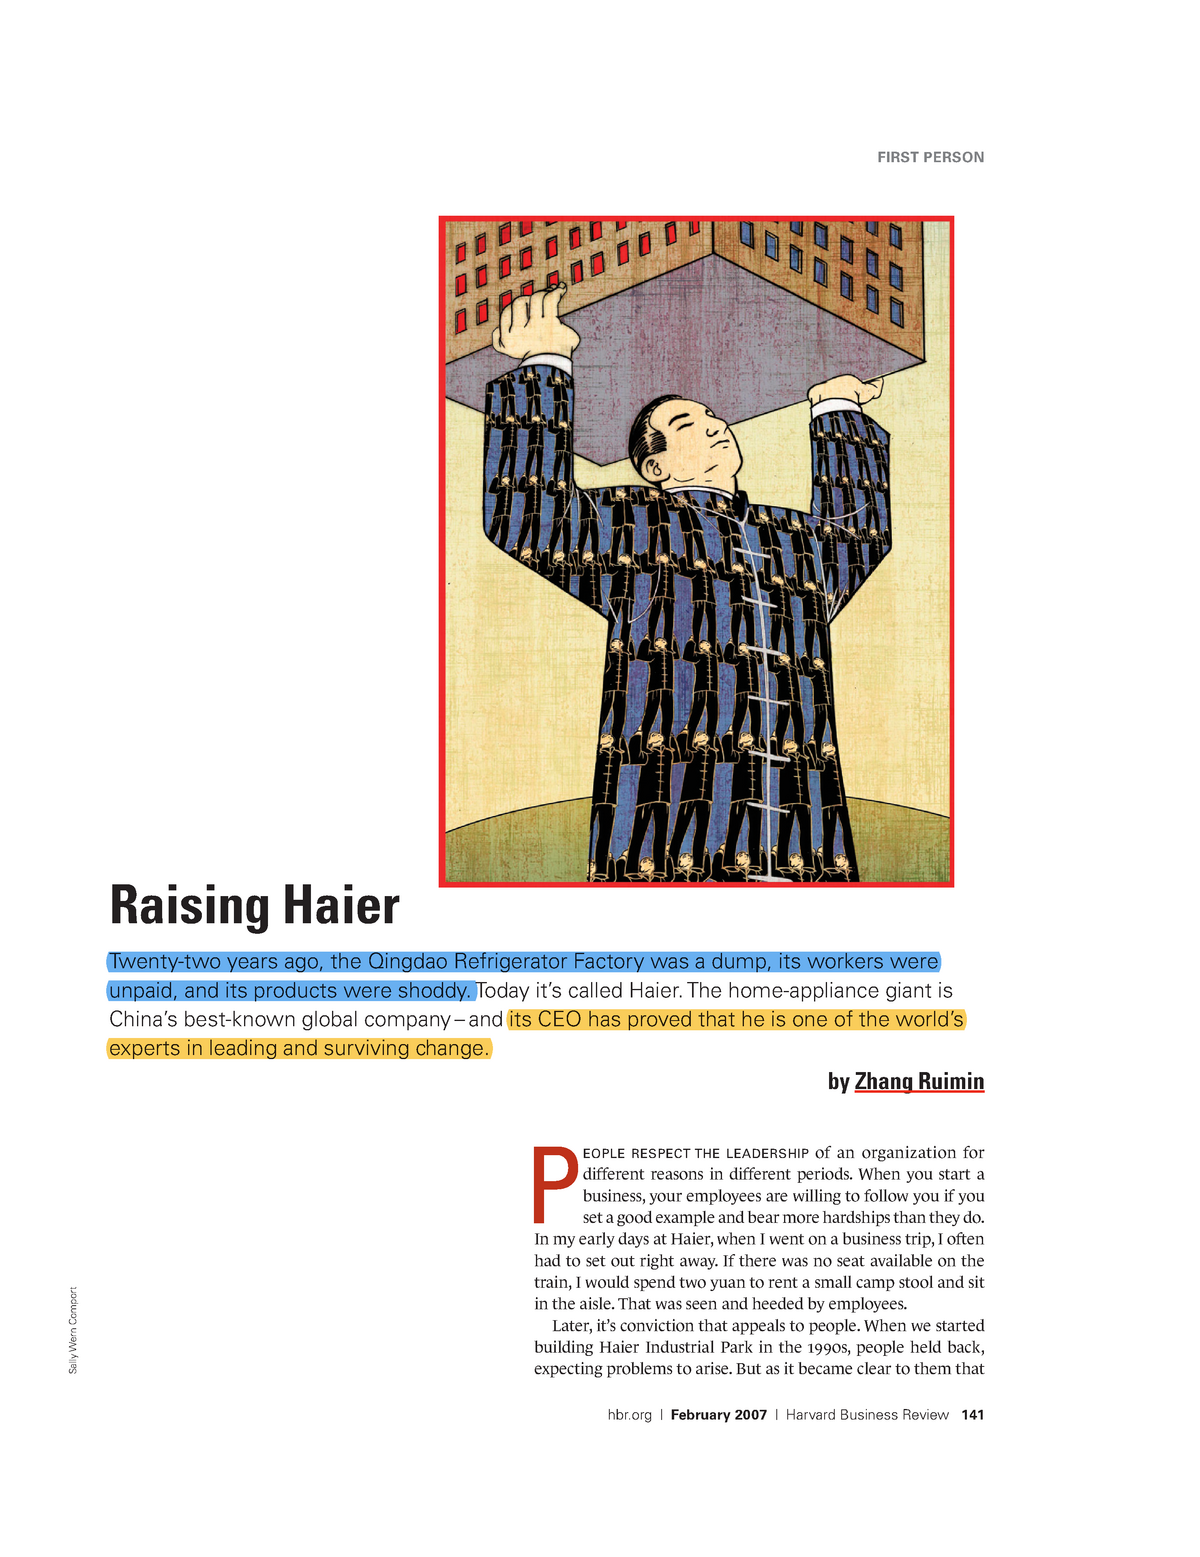 haier case study harvard pdf